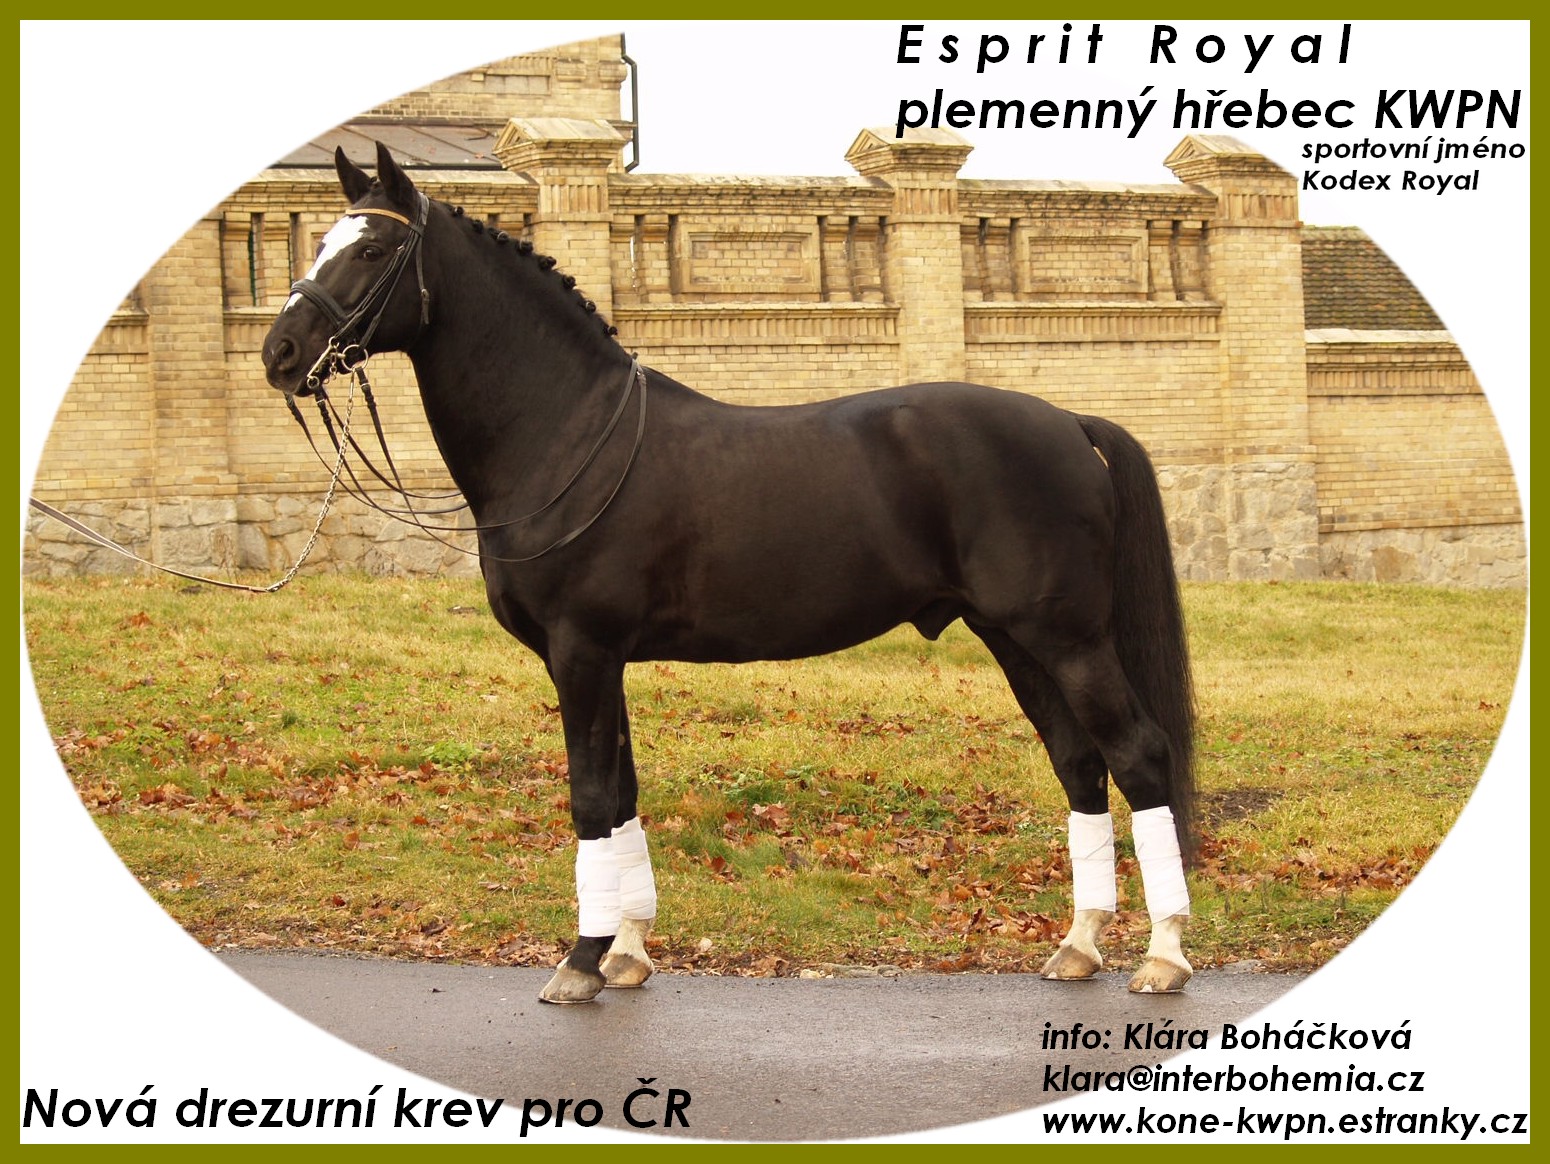 Esprit Royal inzerce.jpg